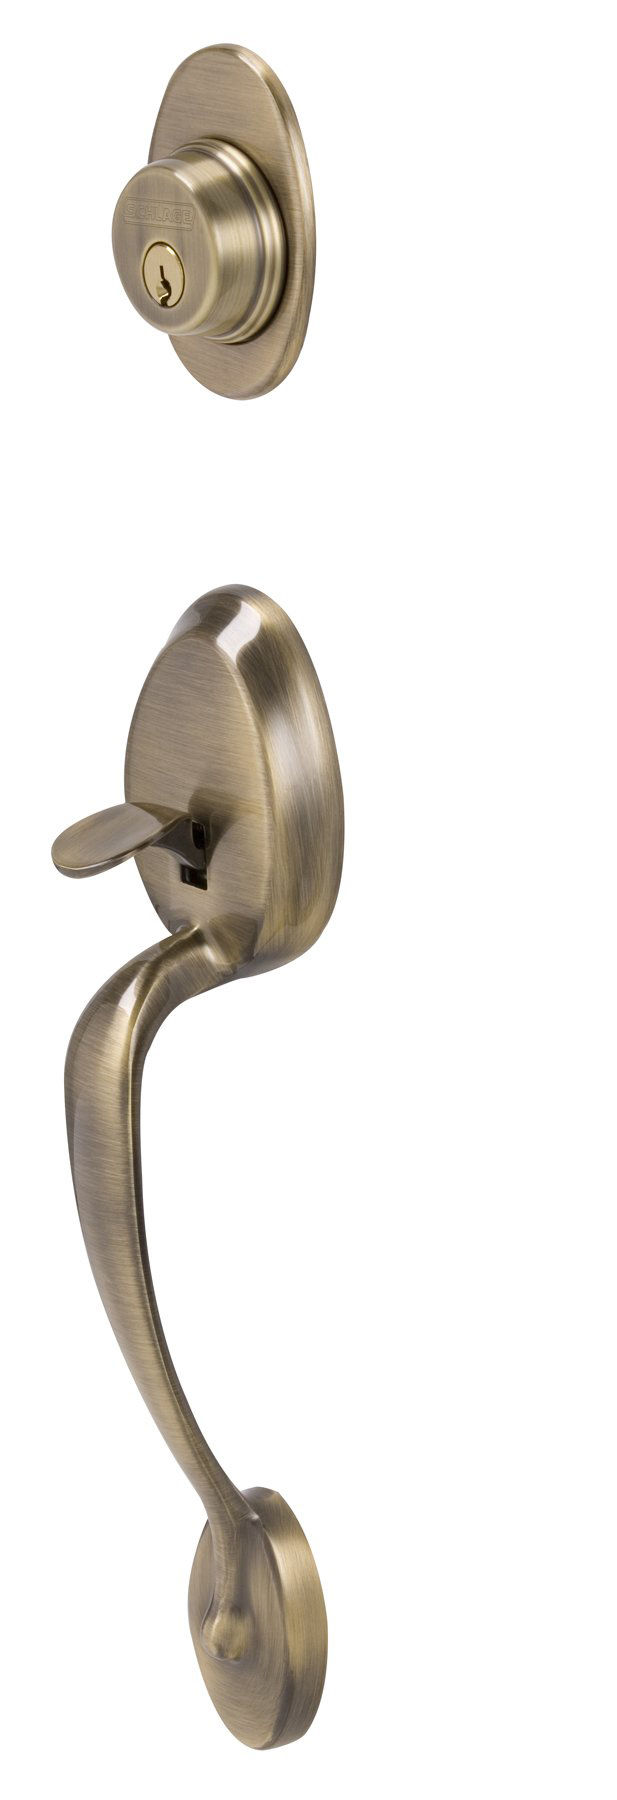 Privacy Door Lock Lever F40 ACC 609 LH Antique Brass Schlage Left Hand